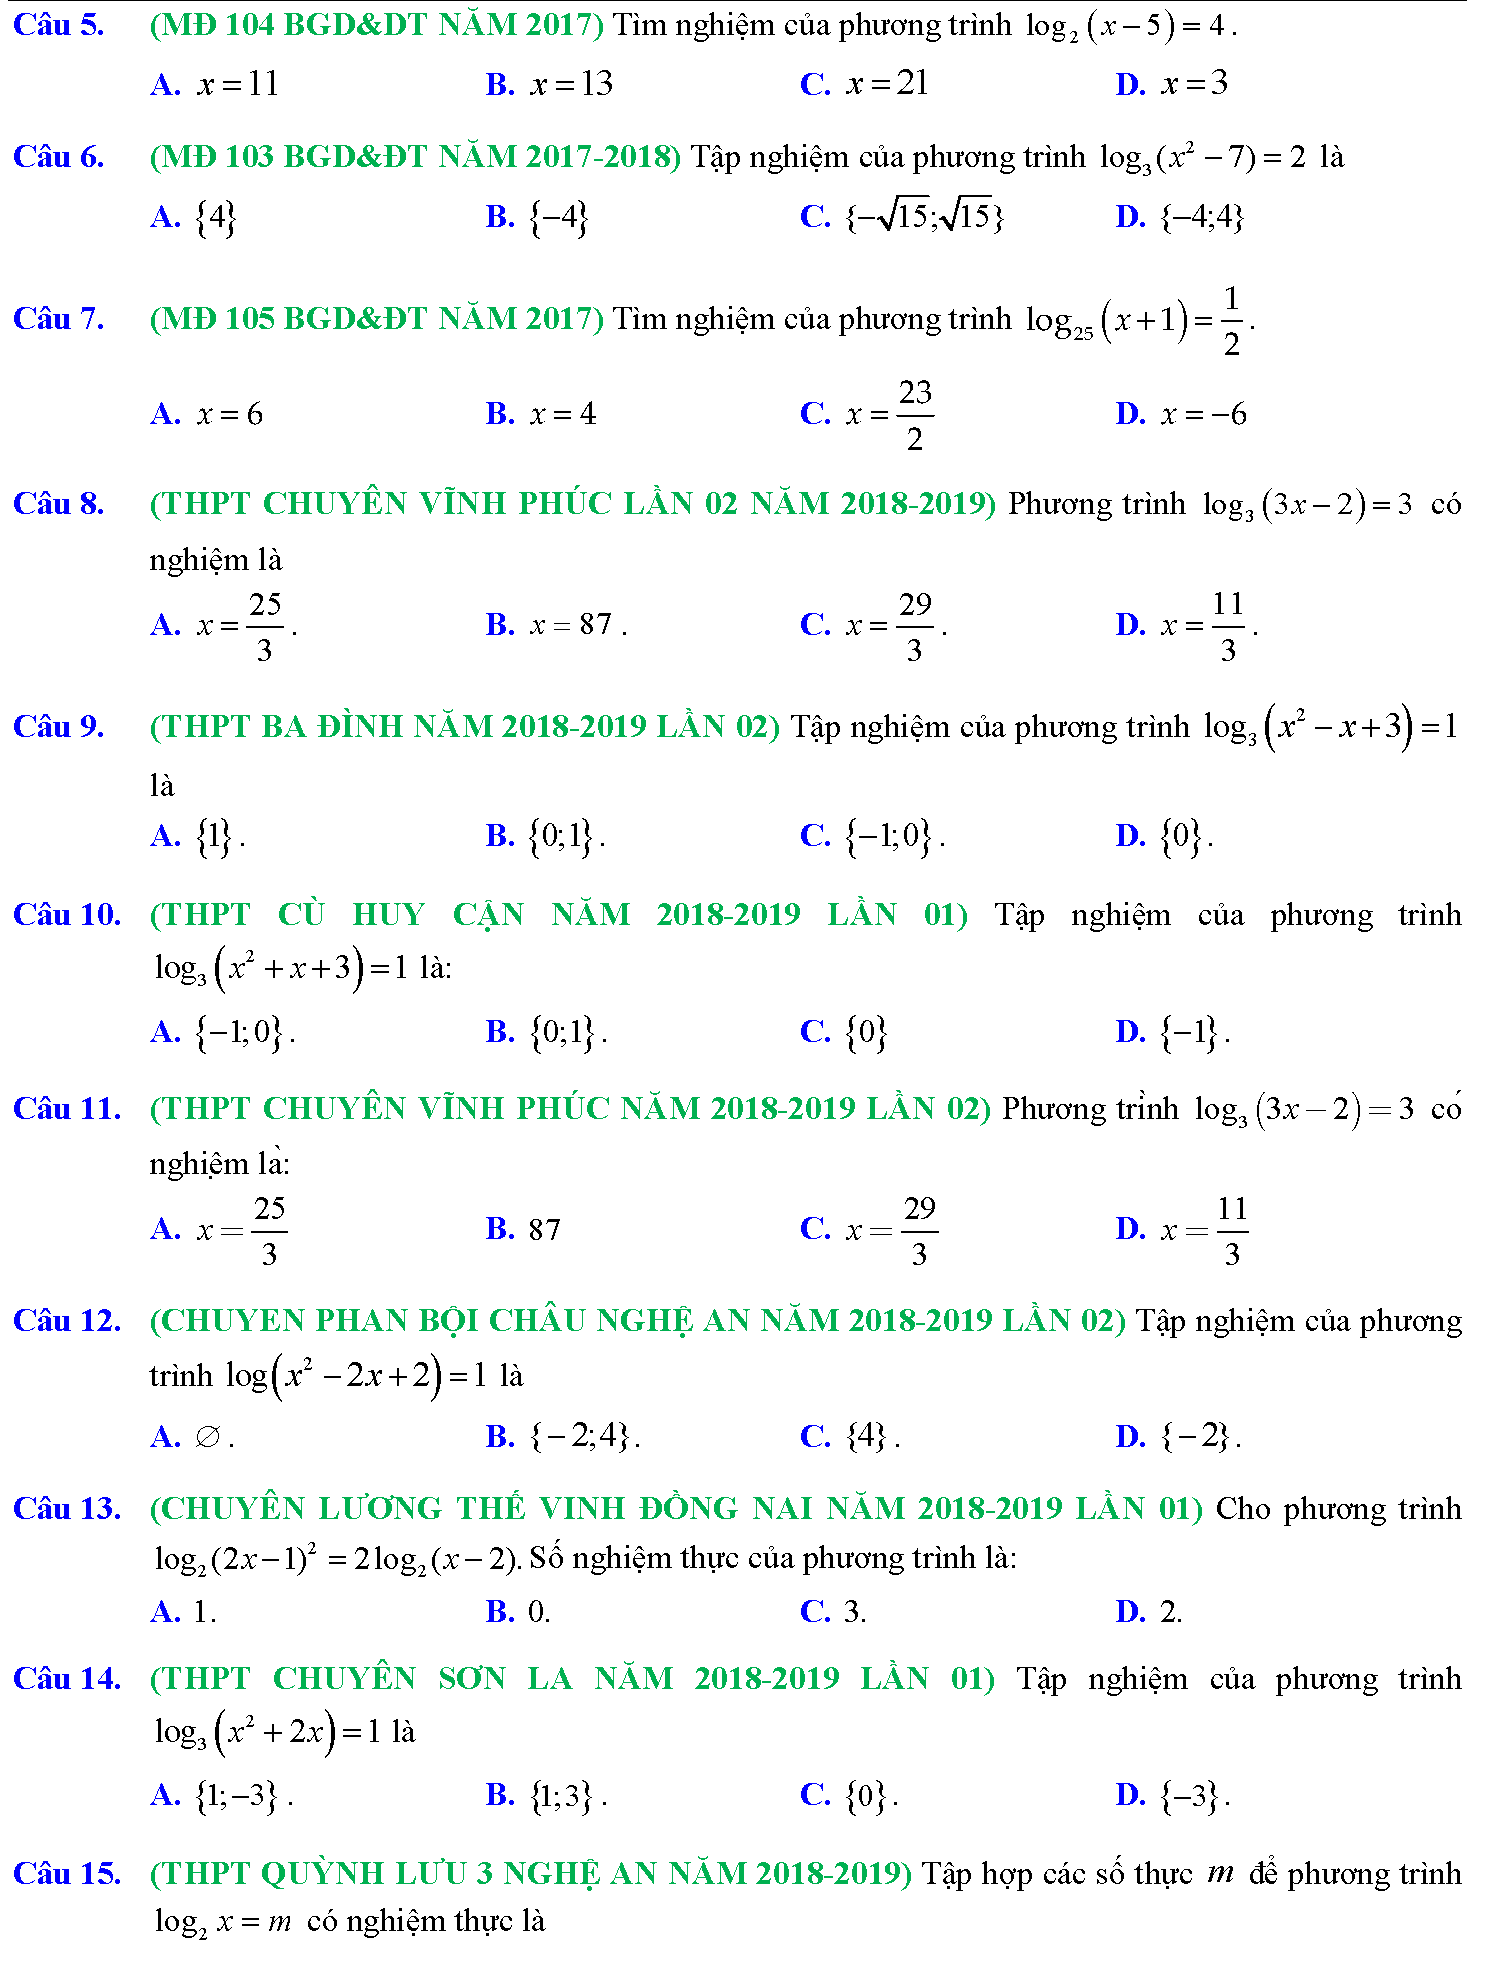 Phương trình mũ, phương trình logarit trong kỳ thi THPTQG 3